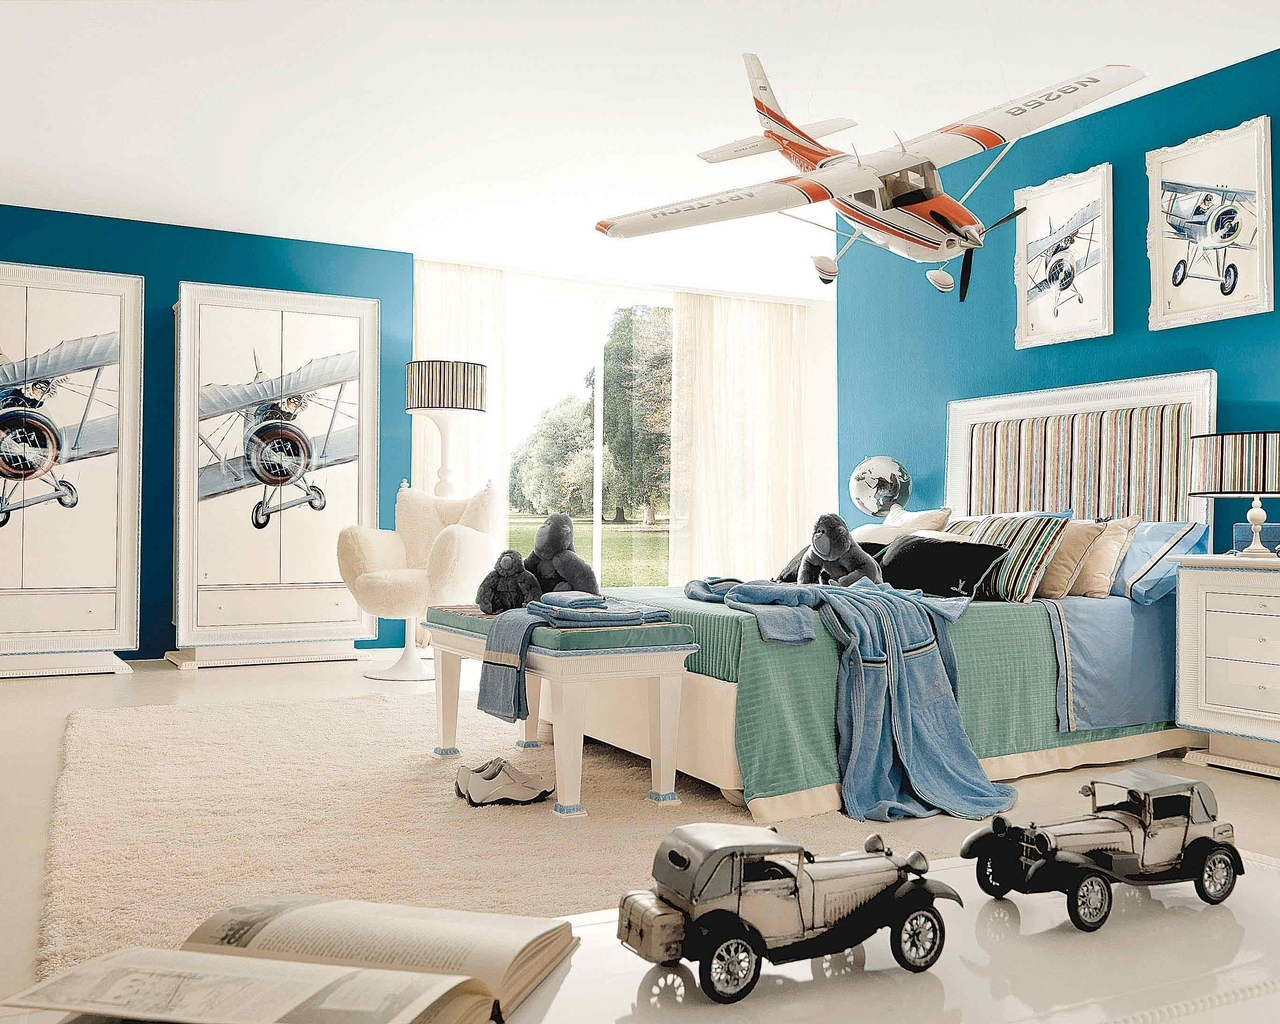 Картинка: Детская комната, кровать, ковёр, торшер, картины, самолёты, игрушки, машинки